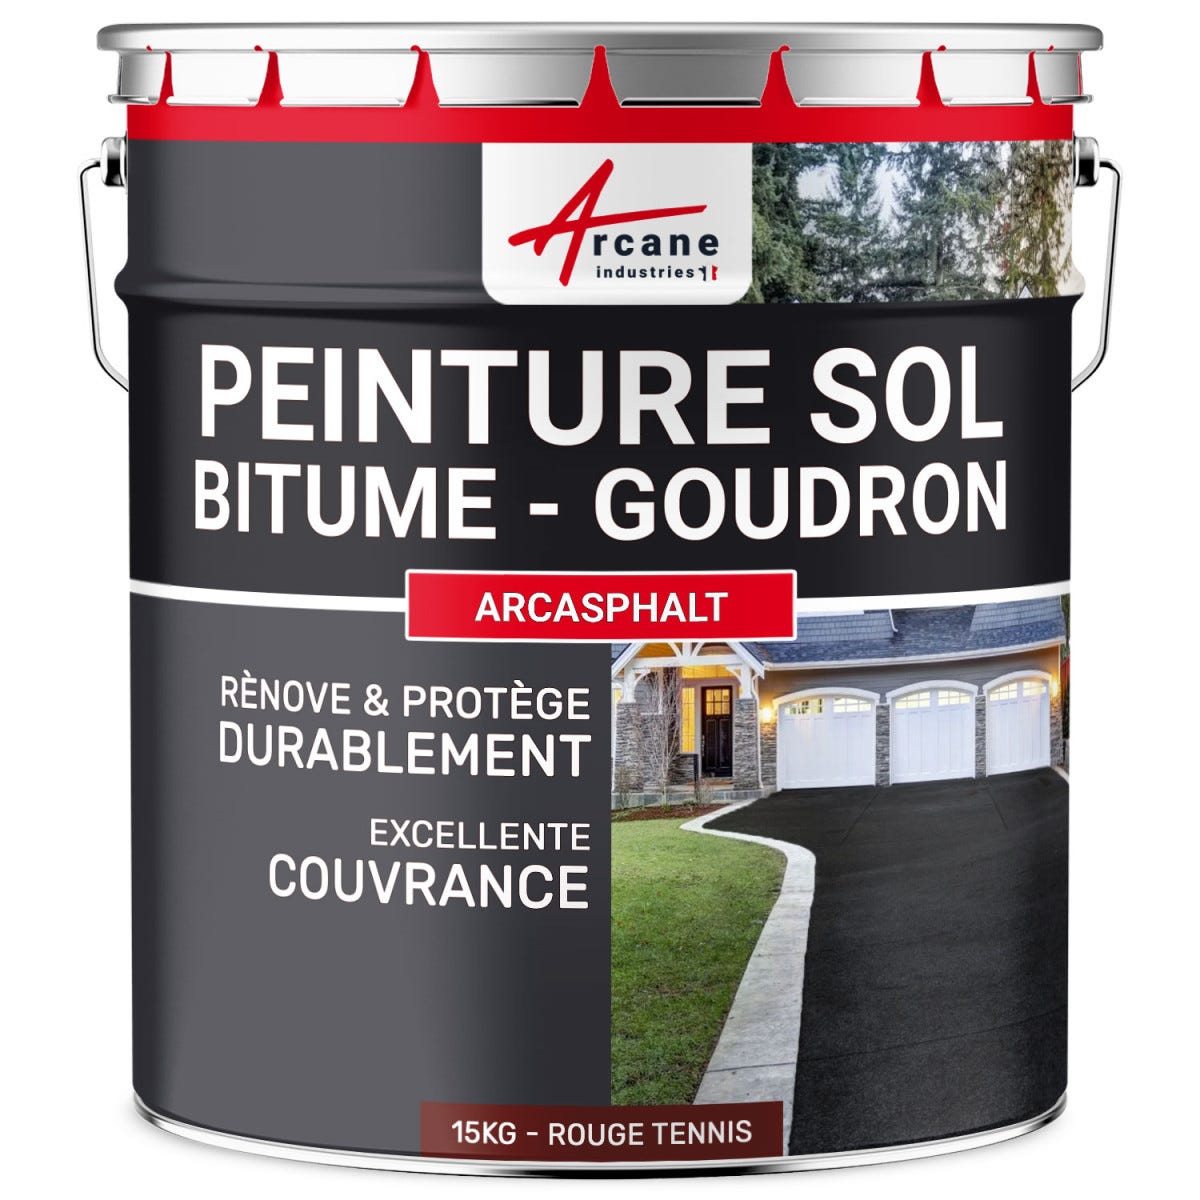 Peinture Bitume, Goudron, Enrobé - ARCASPHALT - 15 kg (jusqu'à 30 m² en 2 couches) - Rouge Tennis - ARCANE INDUSTRIES 5